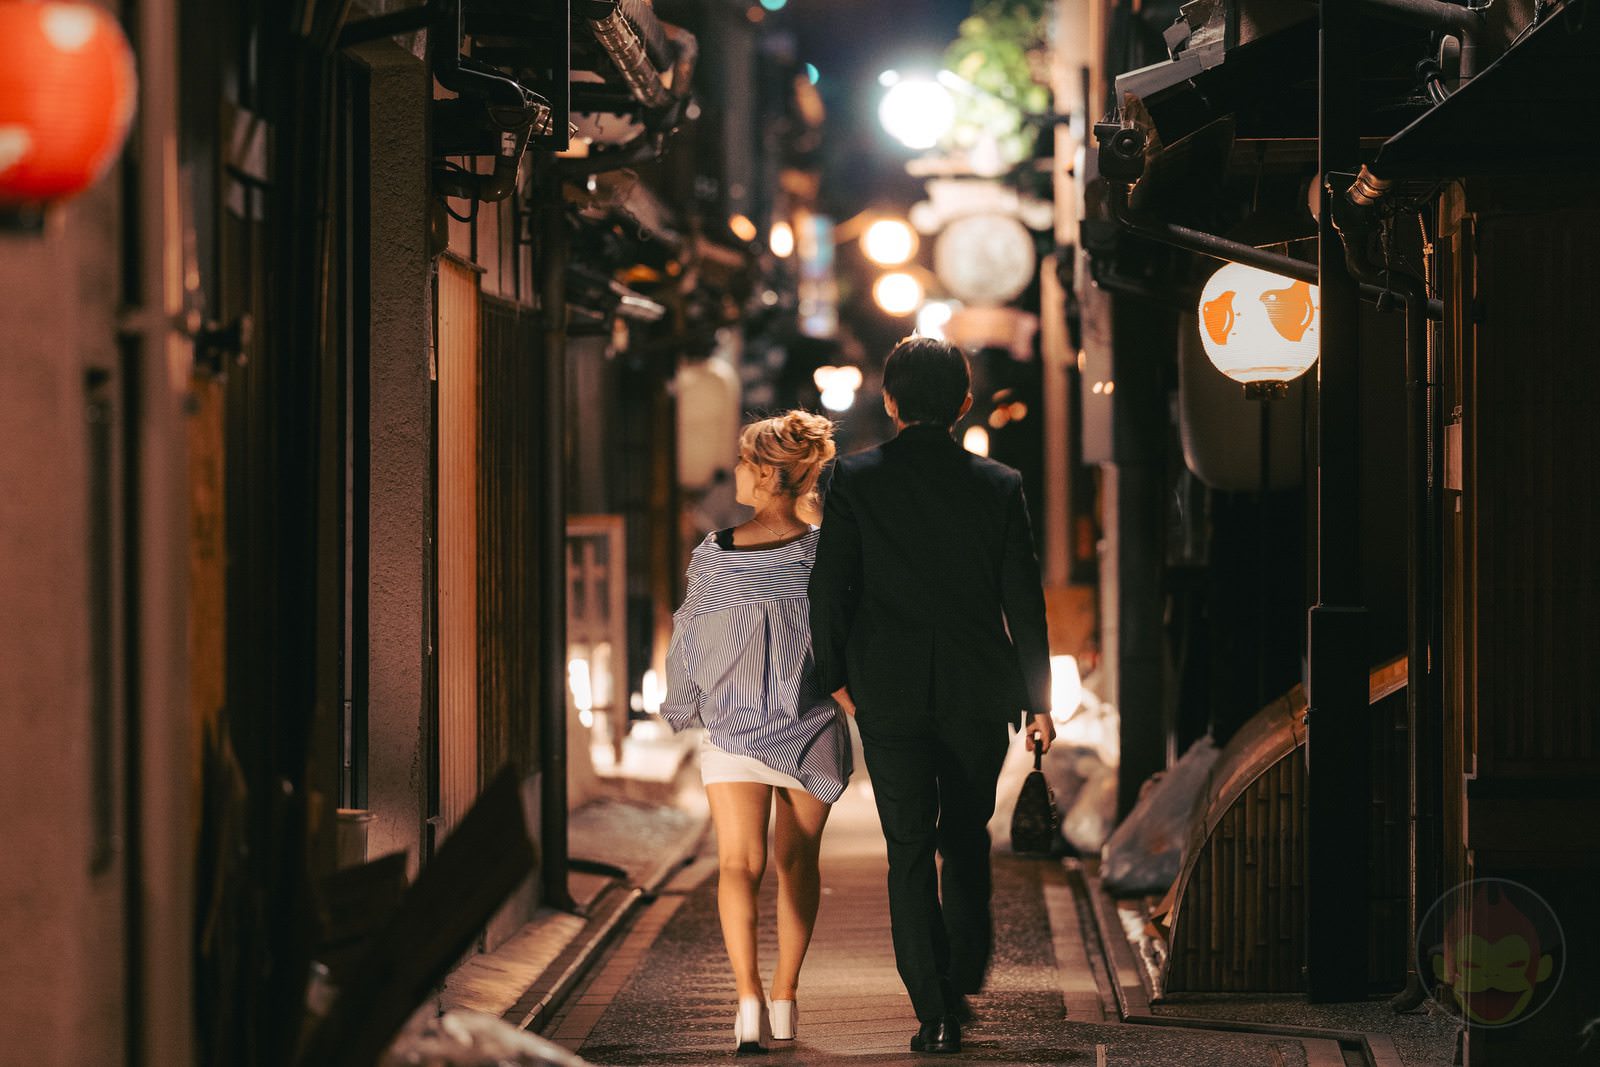 Kyoto Street Snap at midnight 12